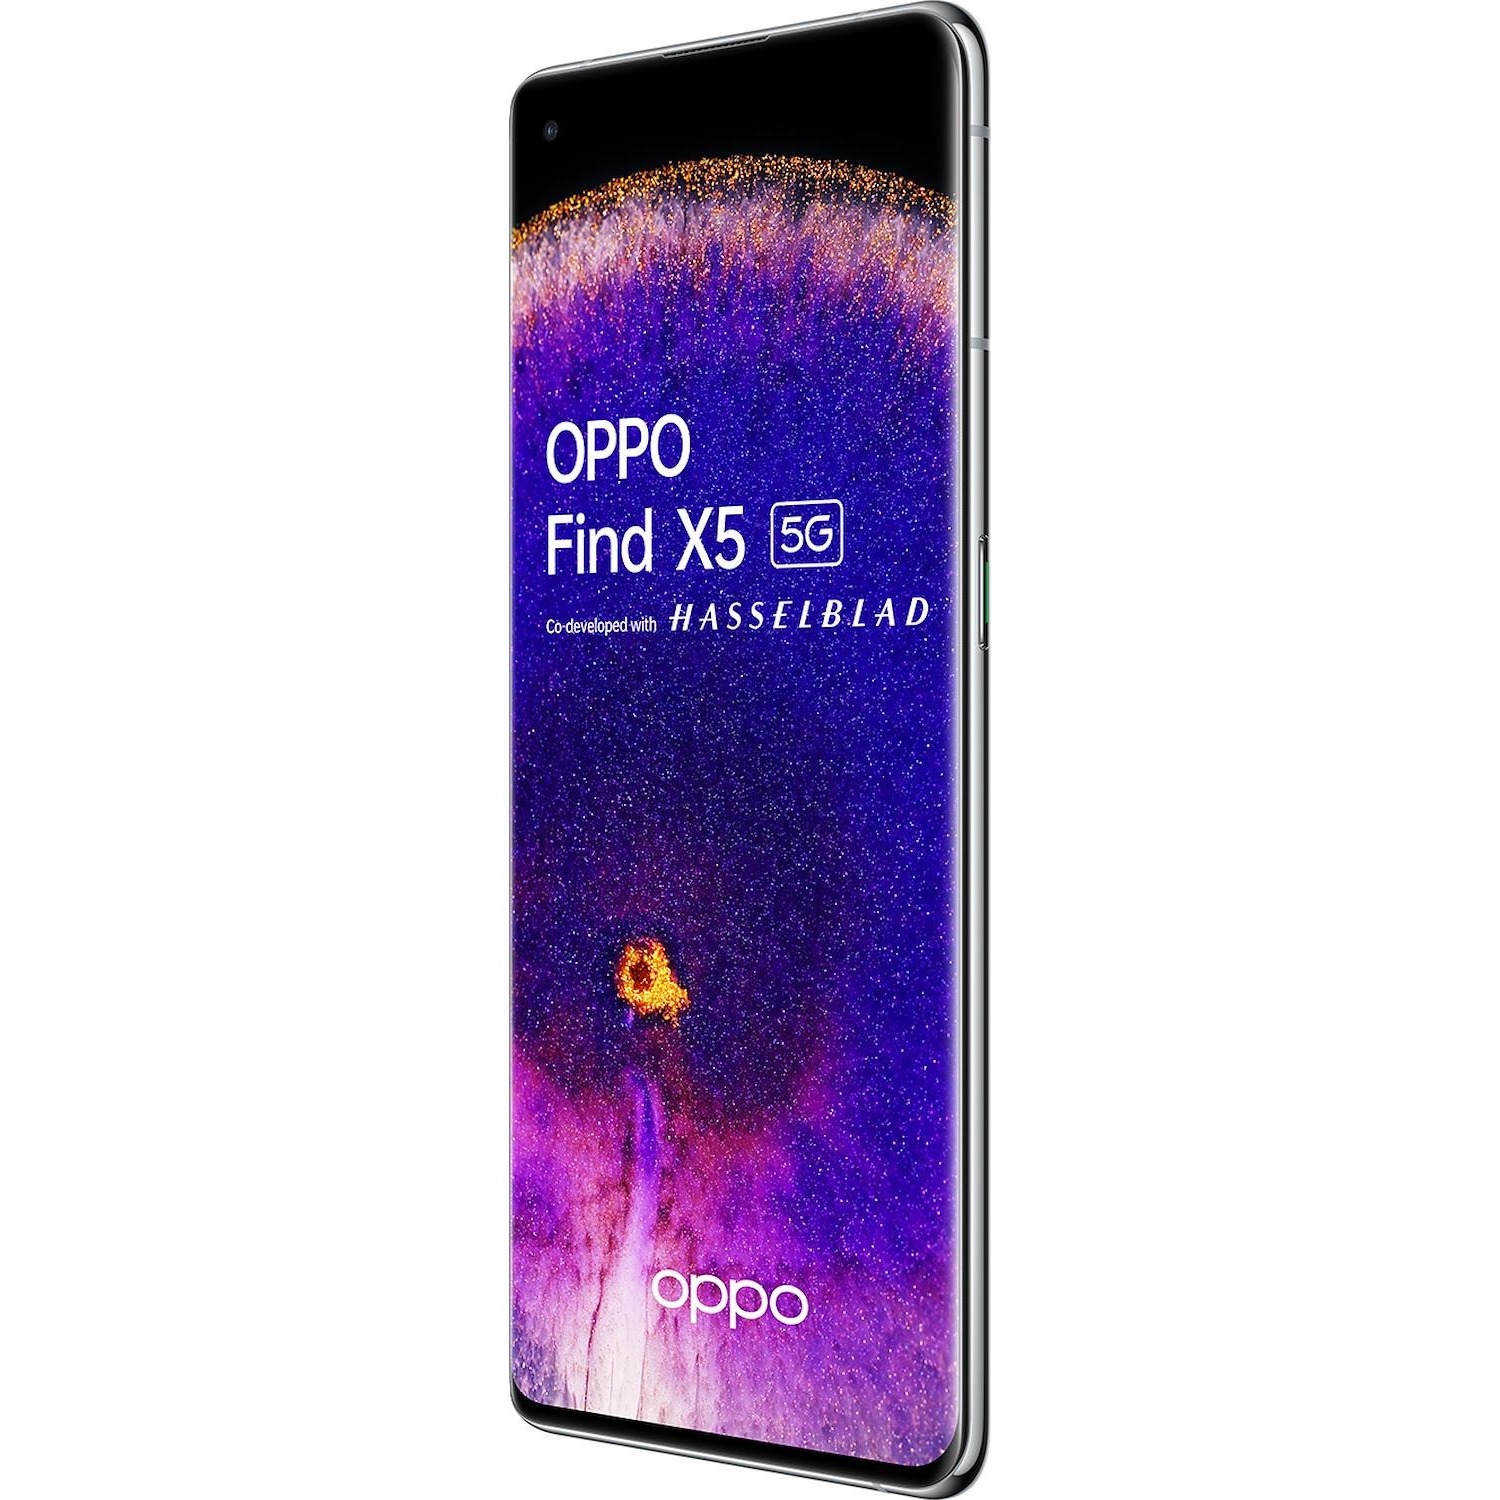 Smartphone Oppo Find X5 white bianco - DIMOStore